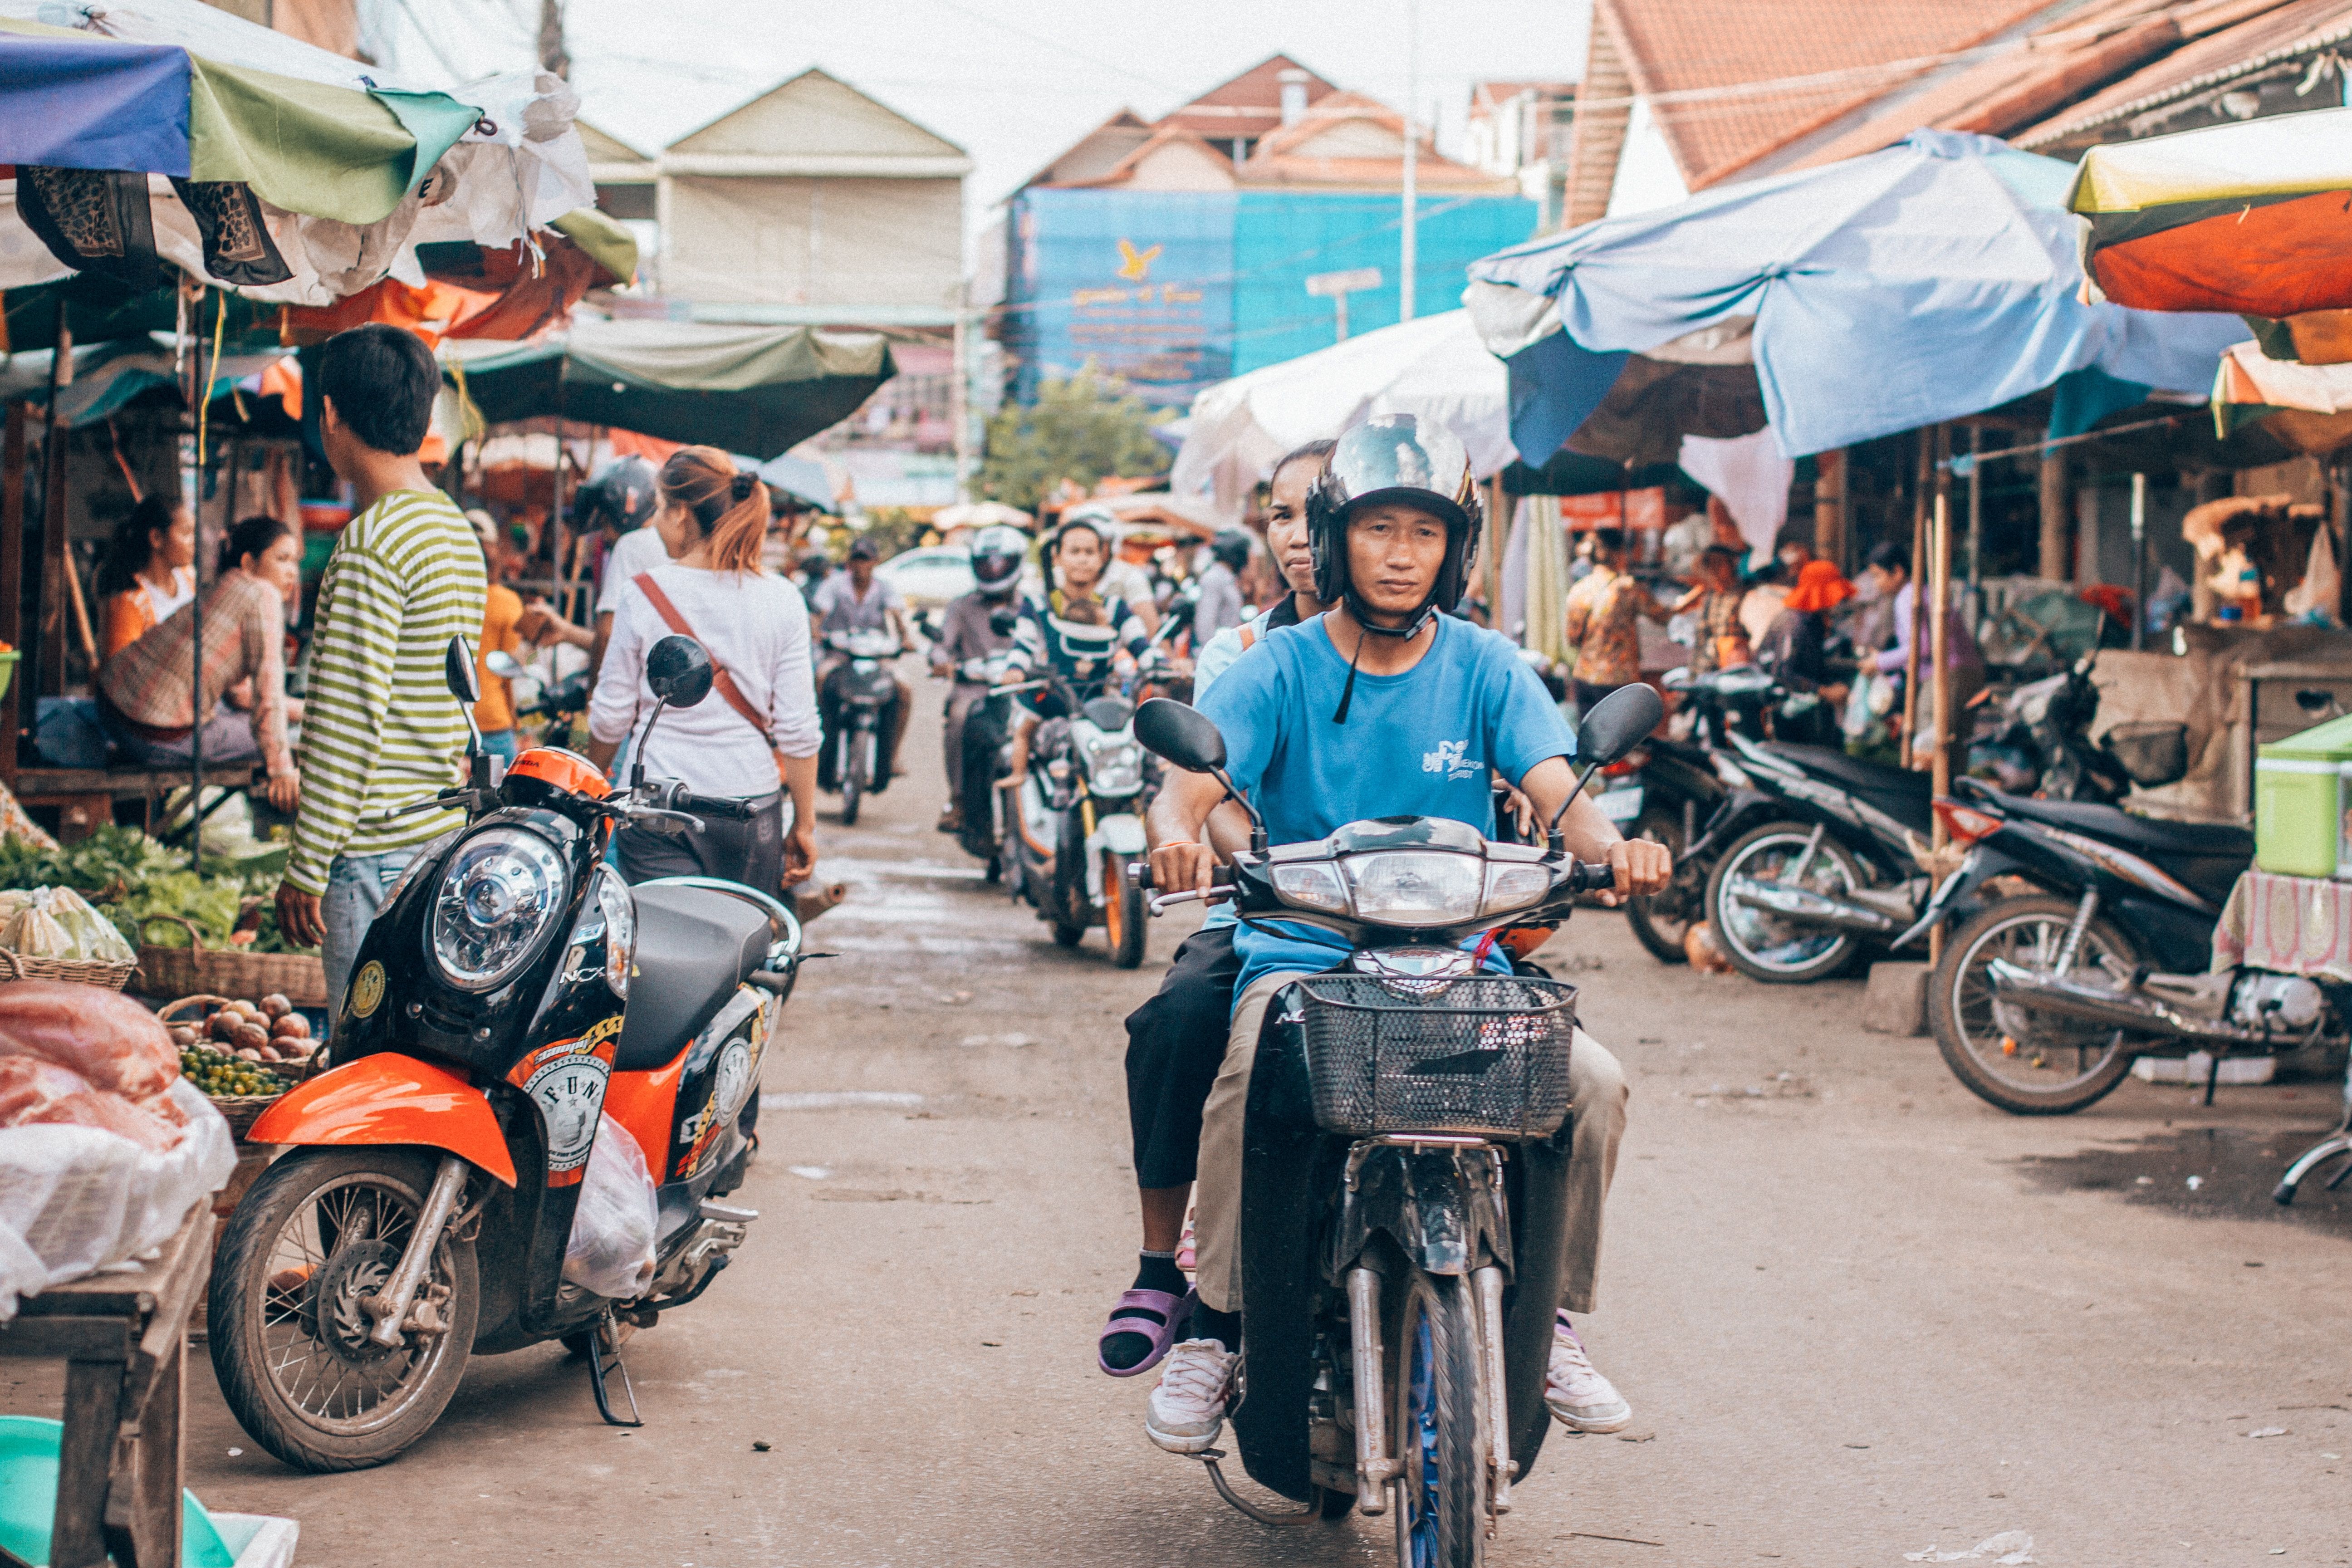 A market in Siem Reap